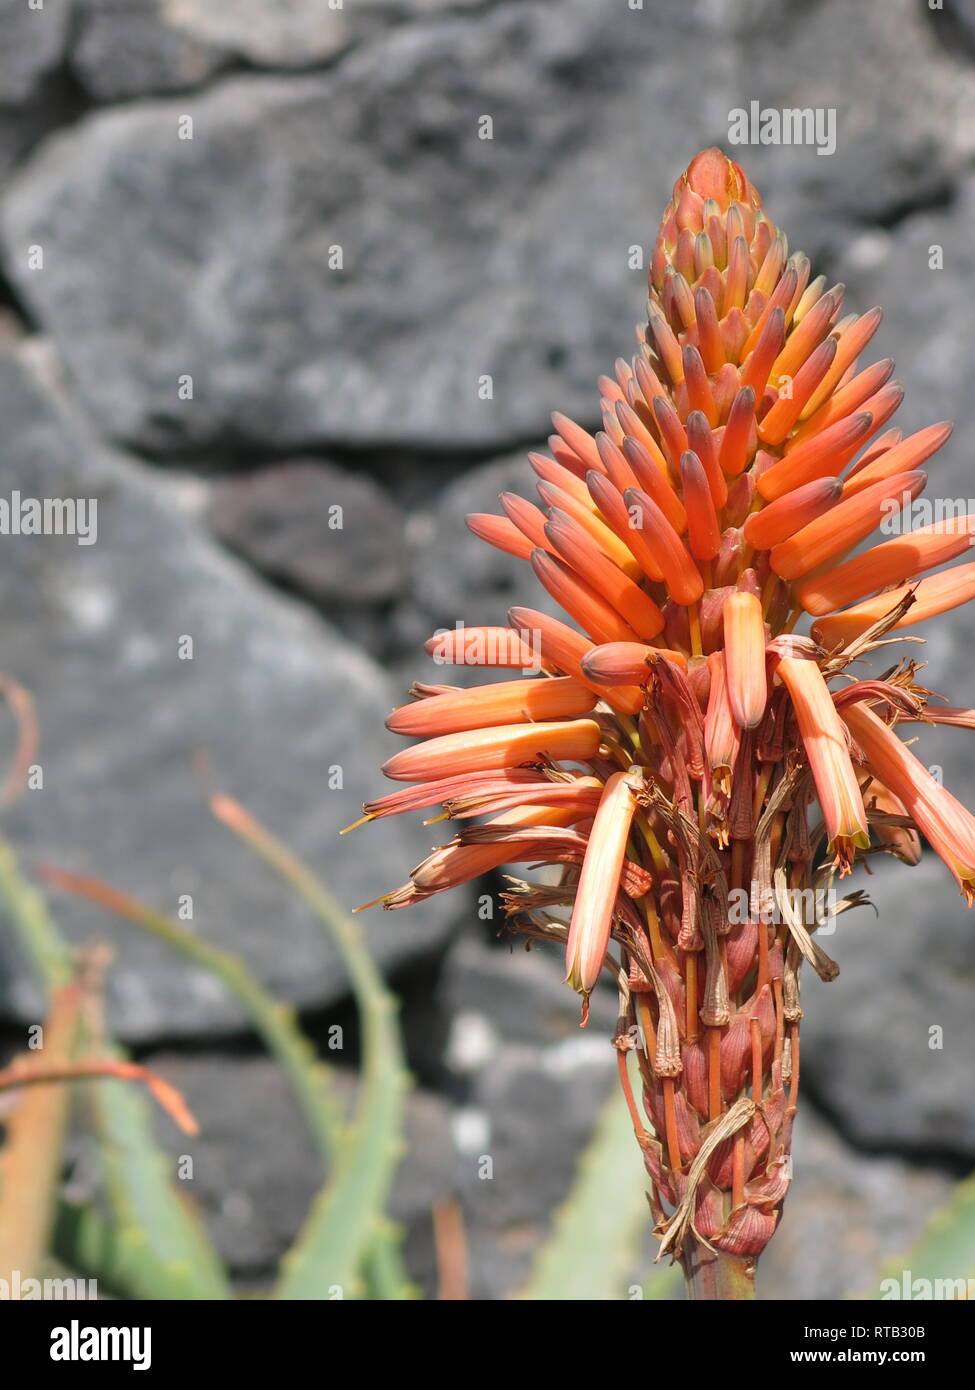 Les fleurs tubulaires orange de l'usine d'aloès sont un contraste frappant contre un mur de roche volcanique noire, février 2019 ; Lanzarote Banque D'Images